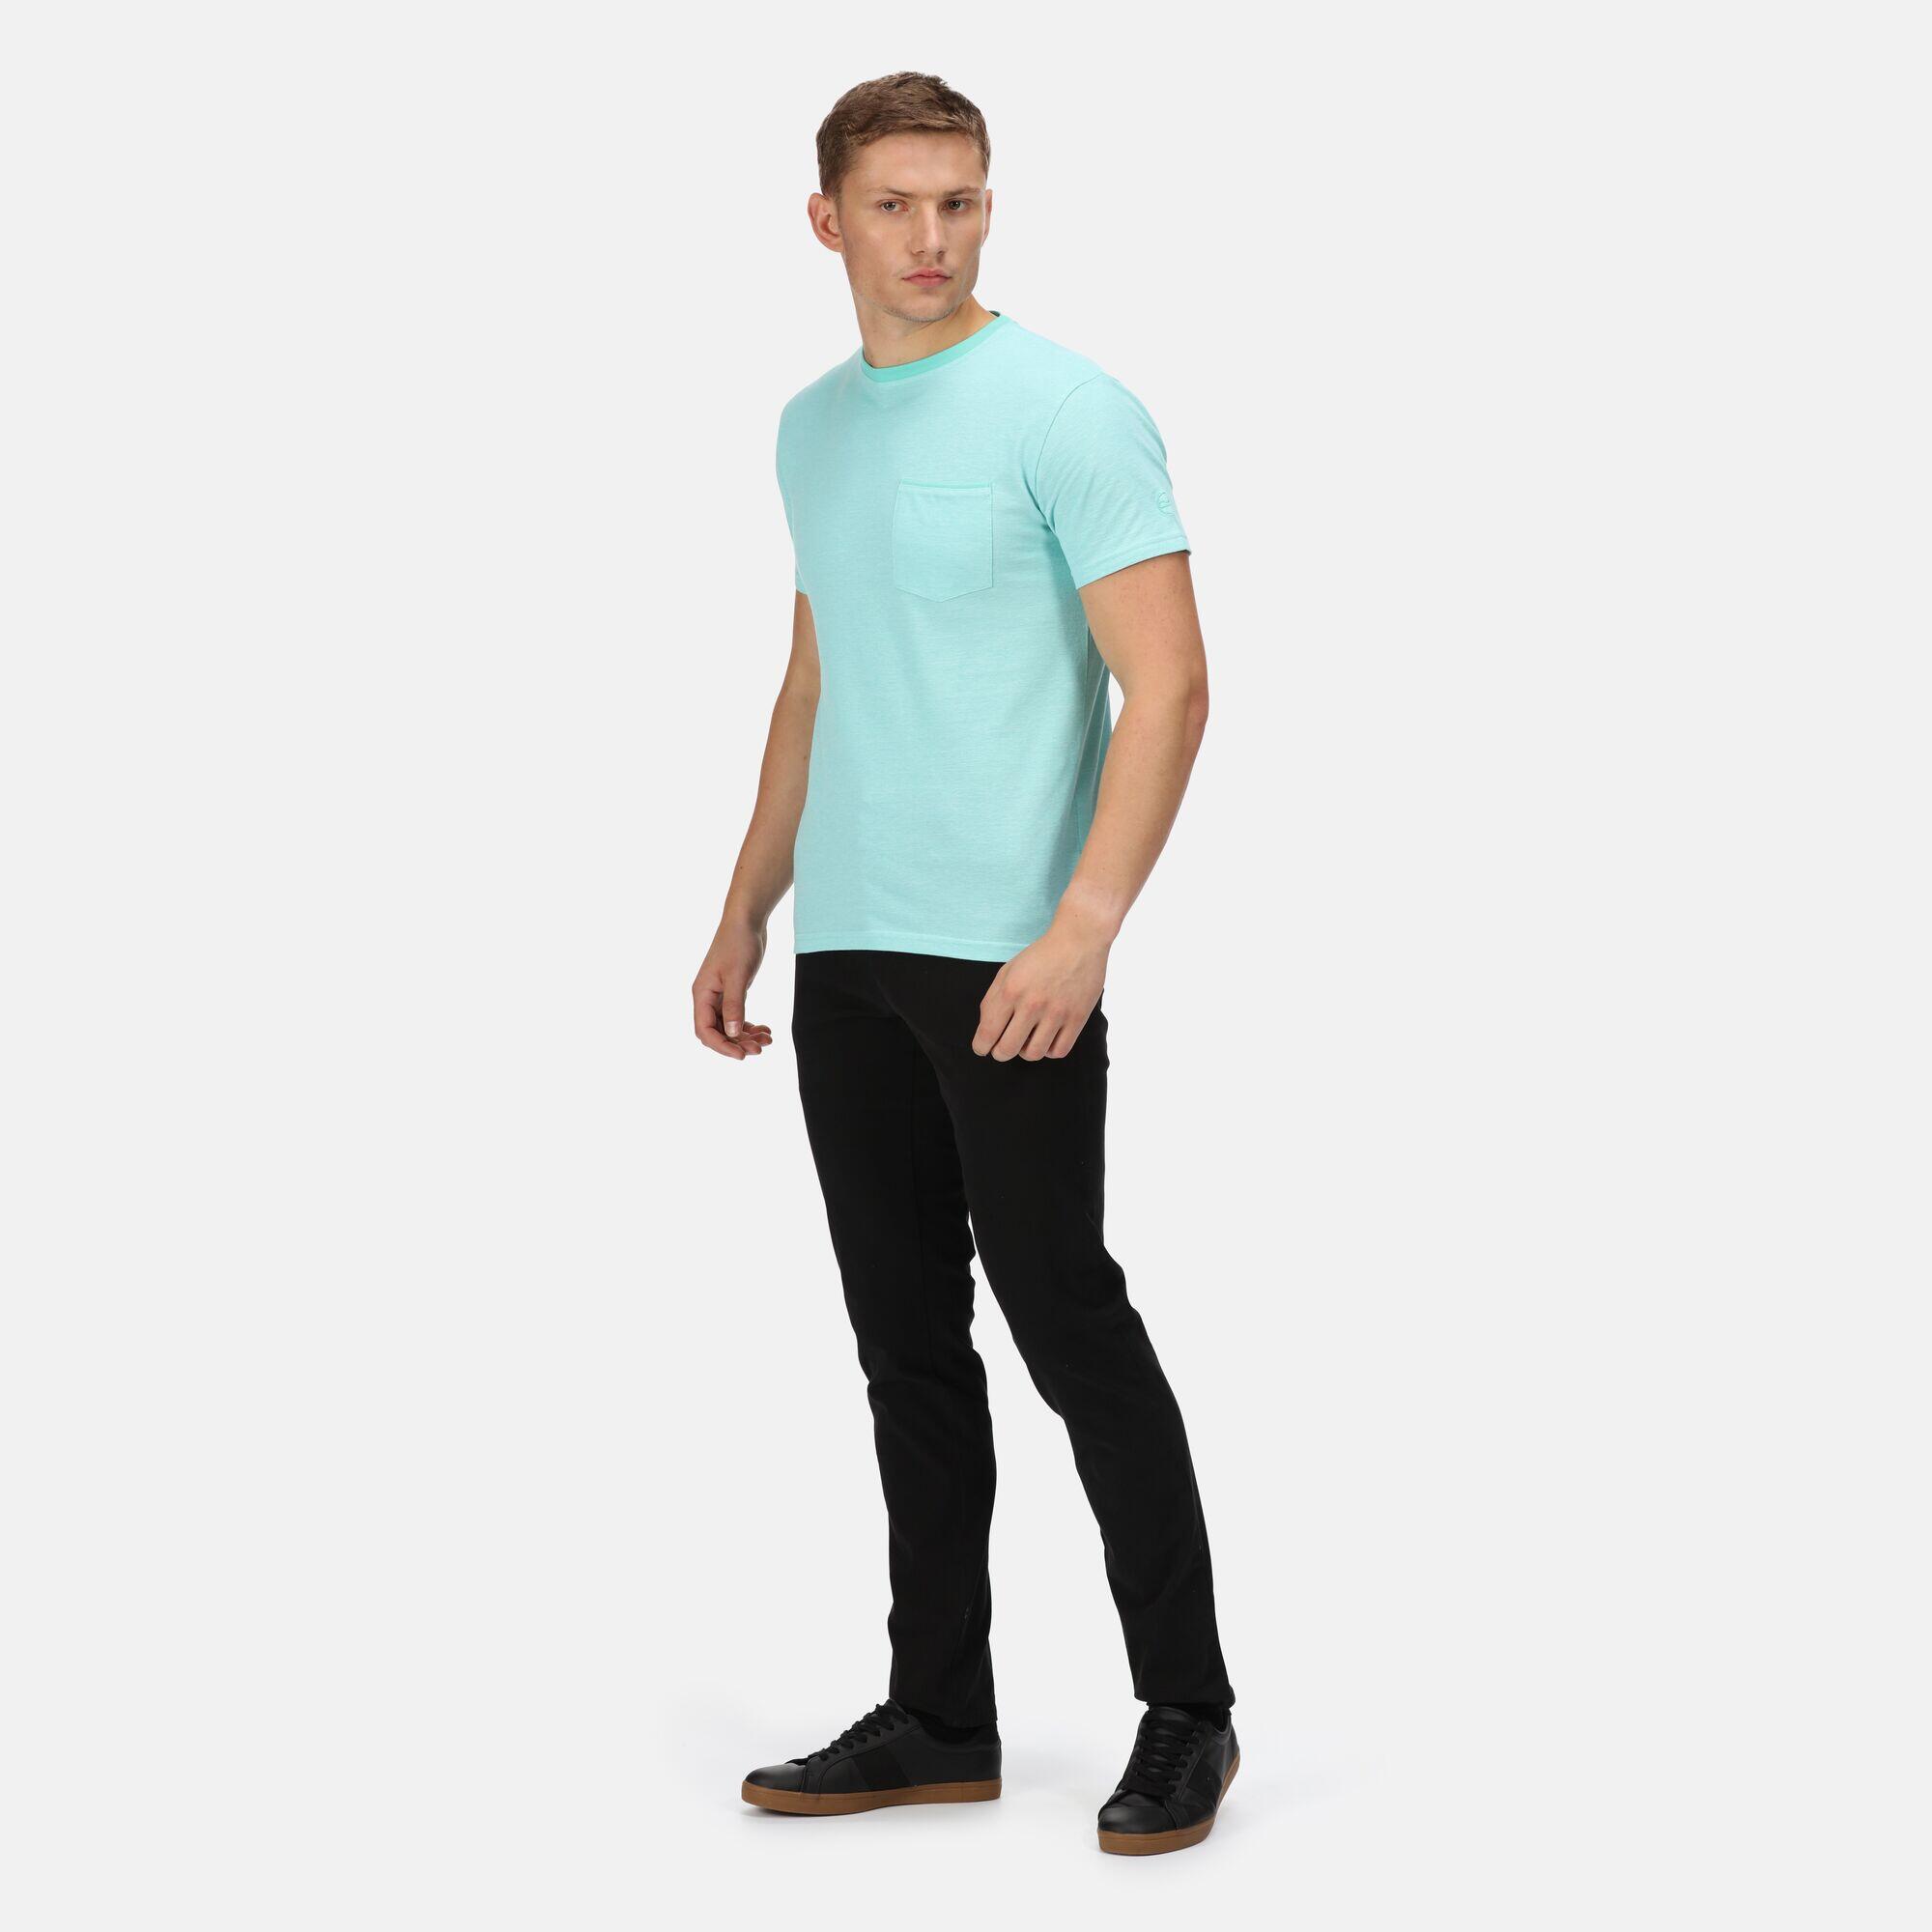 Caelum Men's Walking Short Sleeve T-Shirt - Opal Blue 3/5